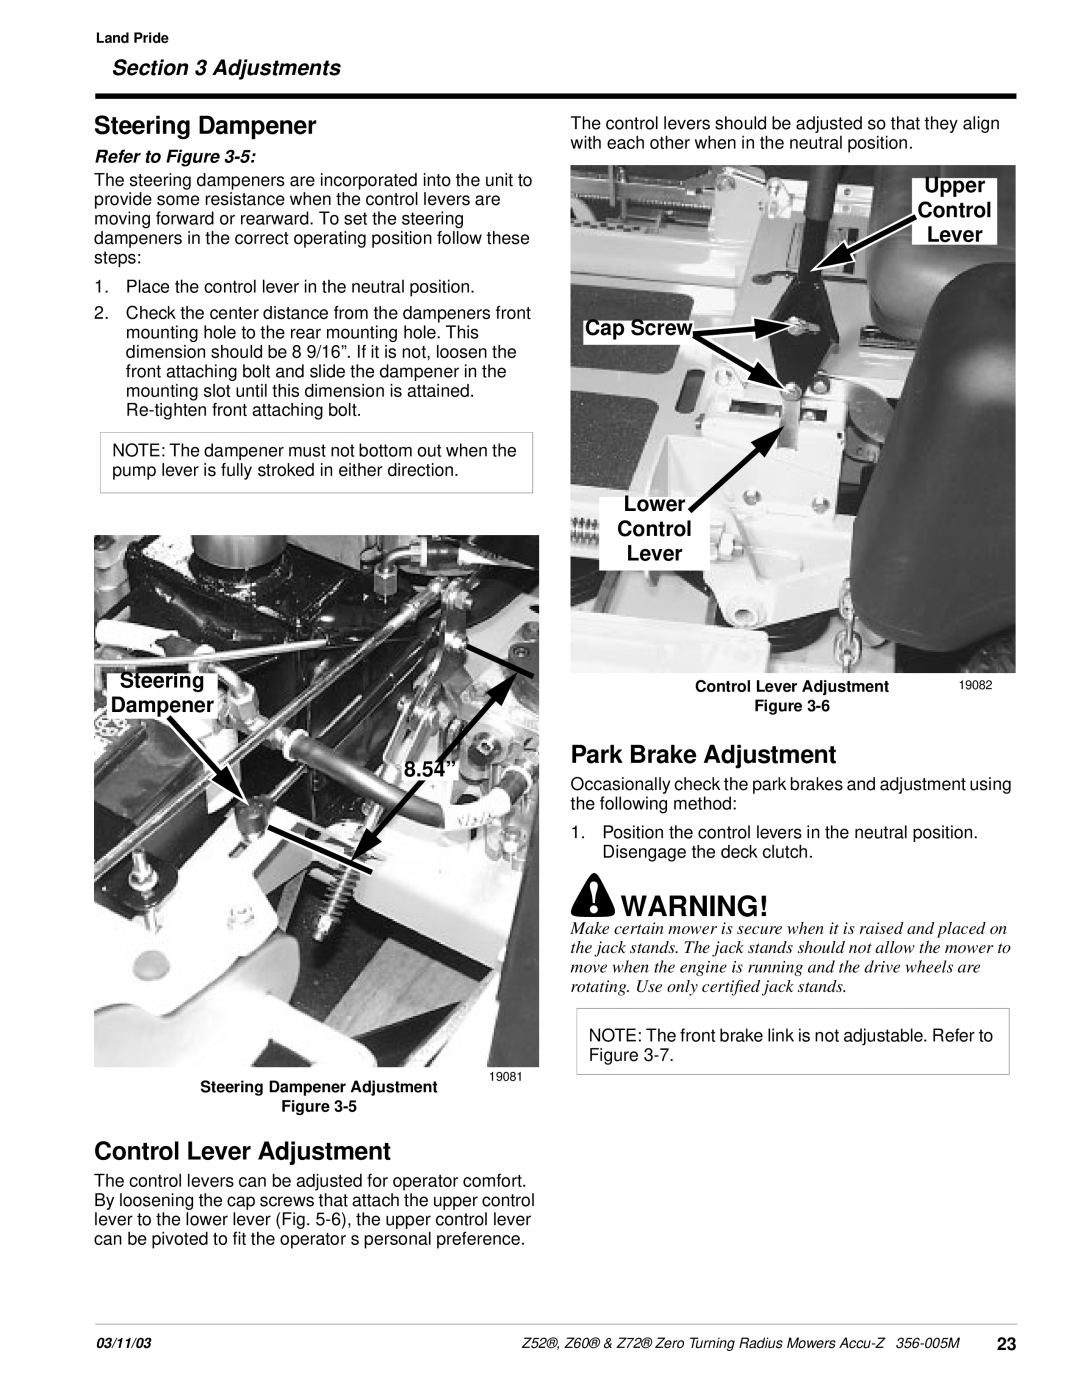 Land Pride Z52 Park Brake Adjustment, Control Lever Adjustment, Steering Dampener 8.54”, Adjustments, Refer to Figure 